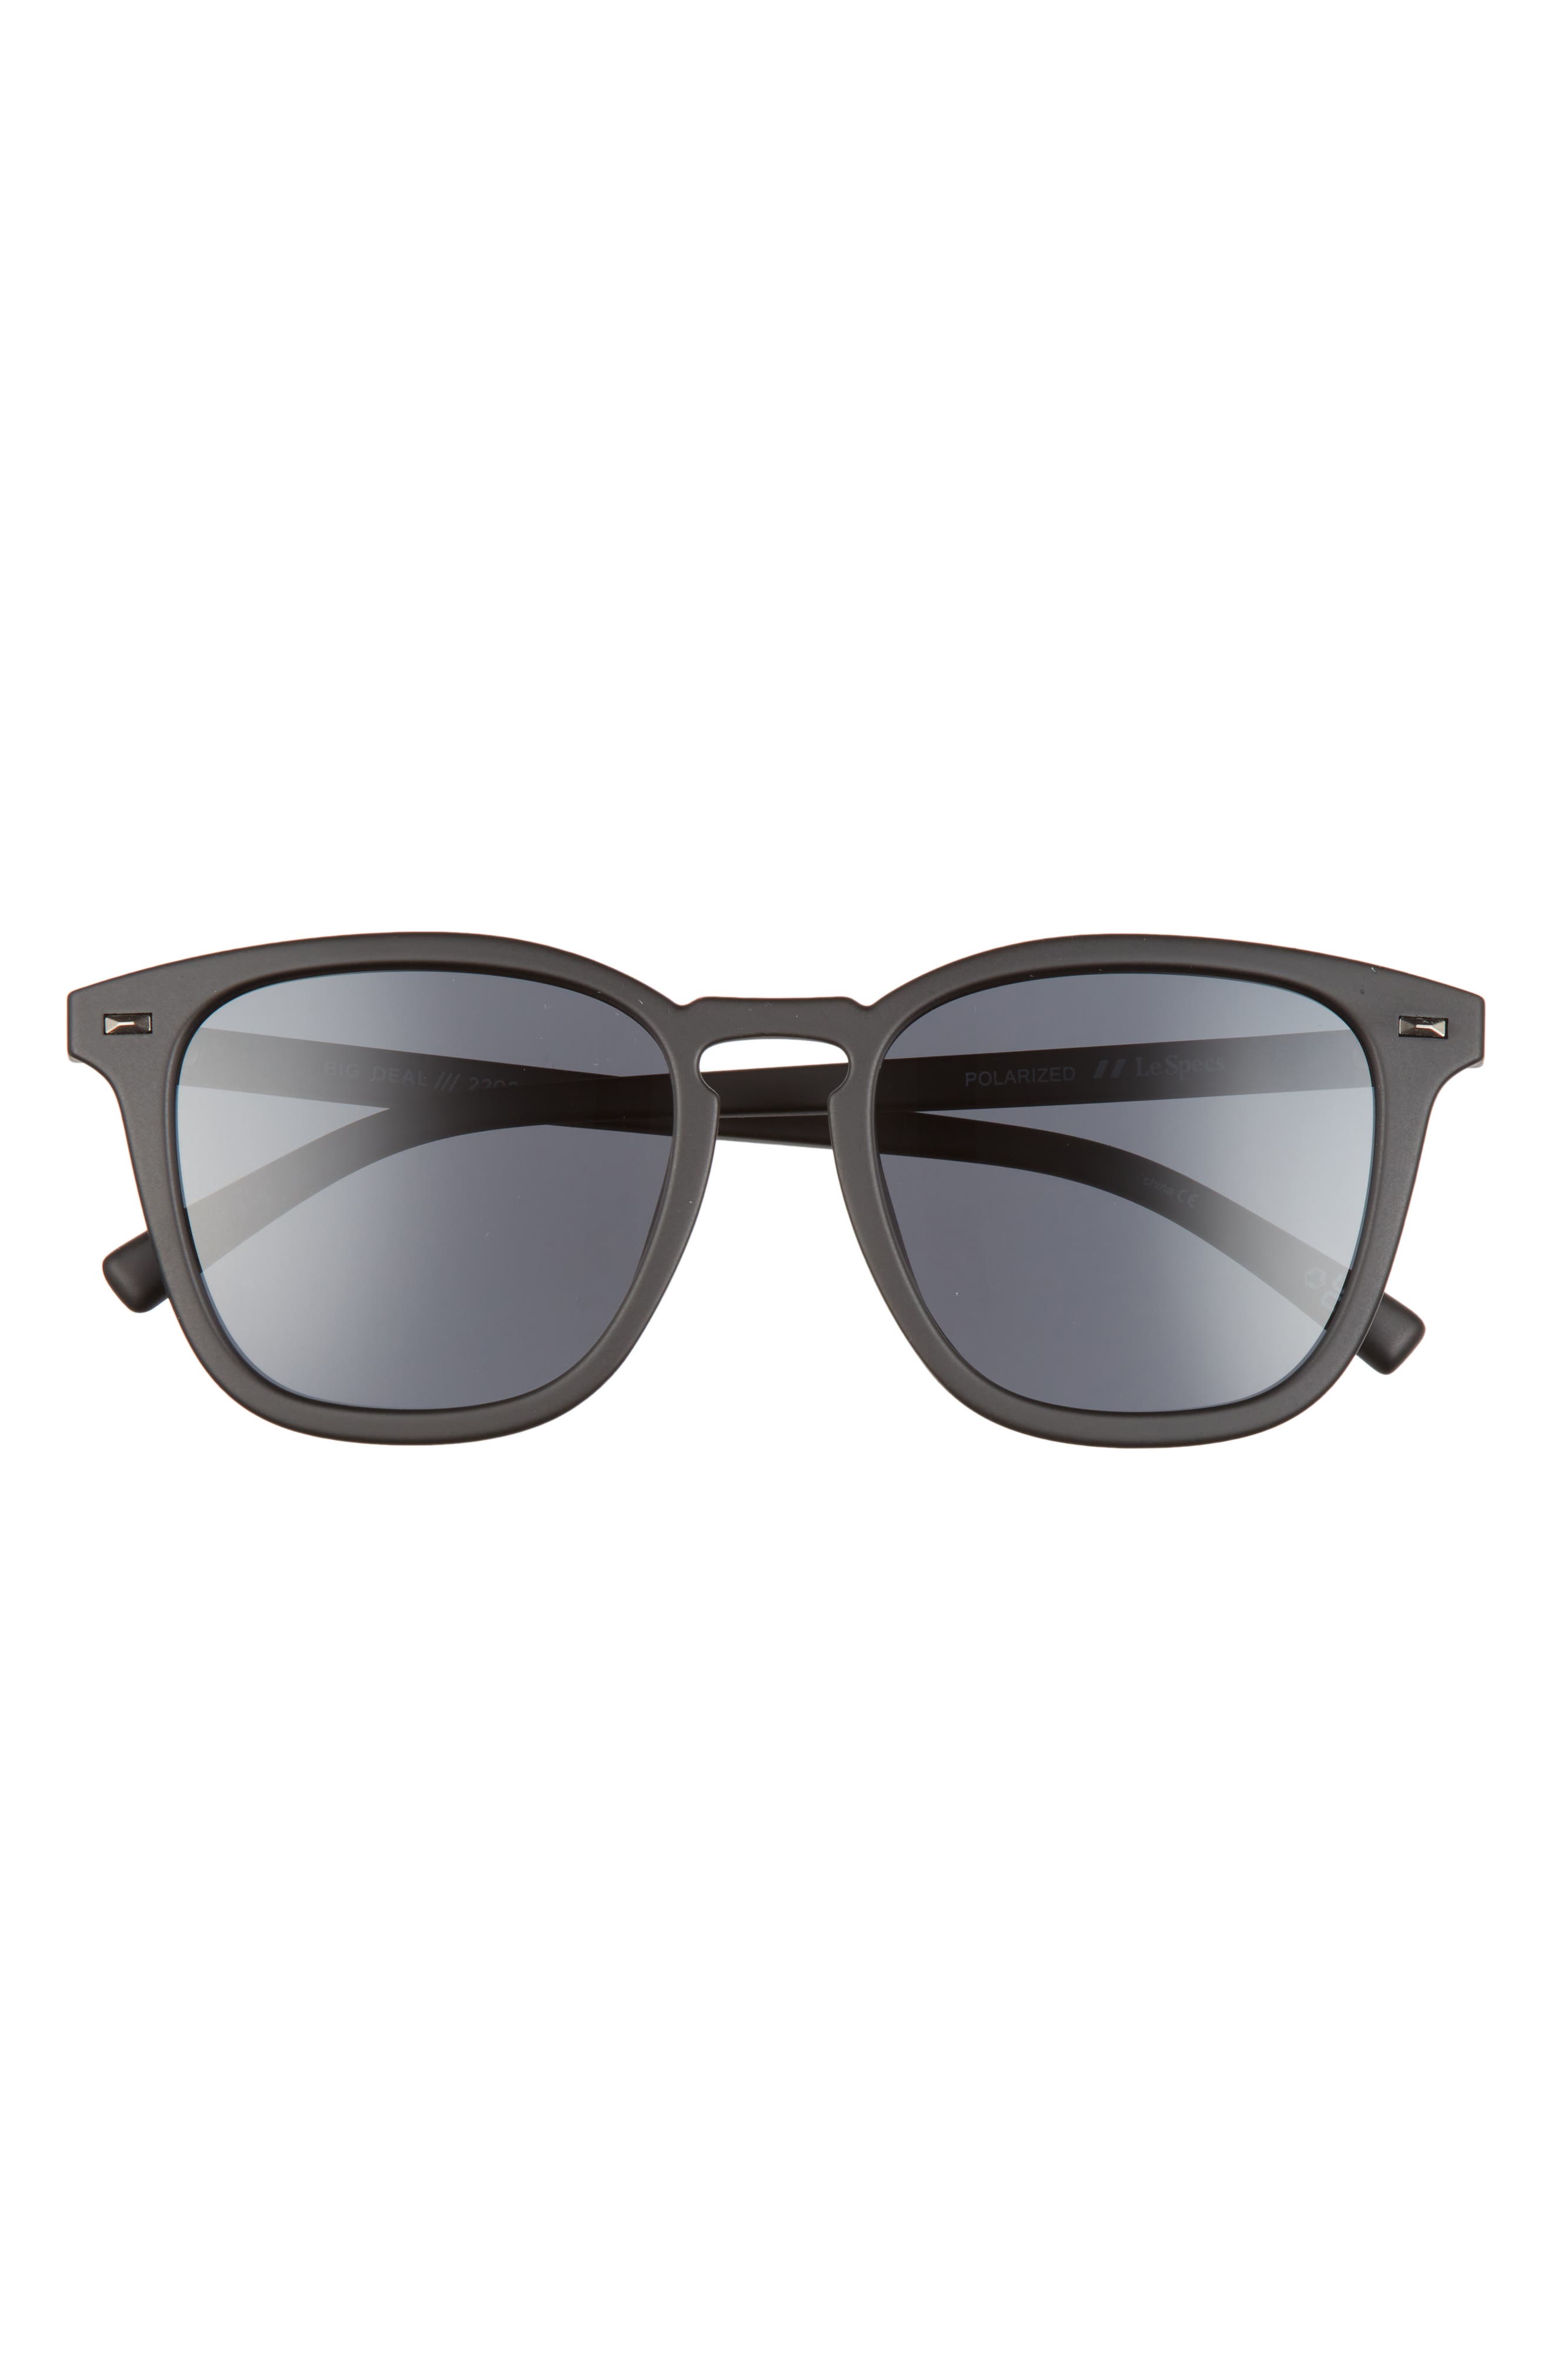 Le Specs Big Deal 53mm Square Sunglasses in Matte Black Smoke Mono Polar at Nordstrom